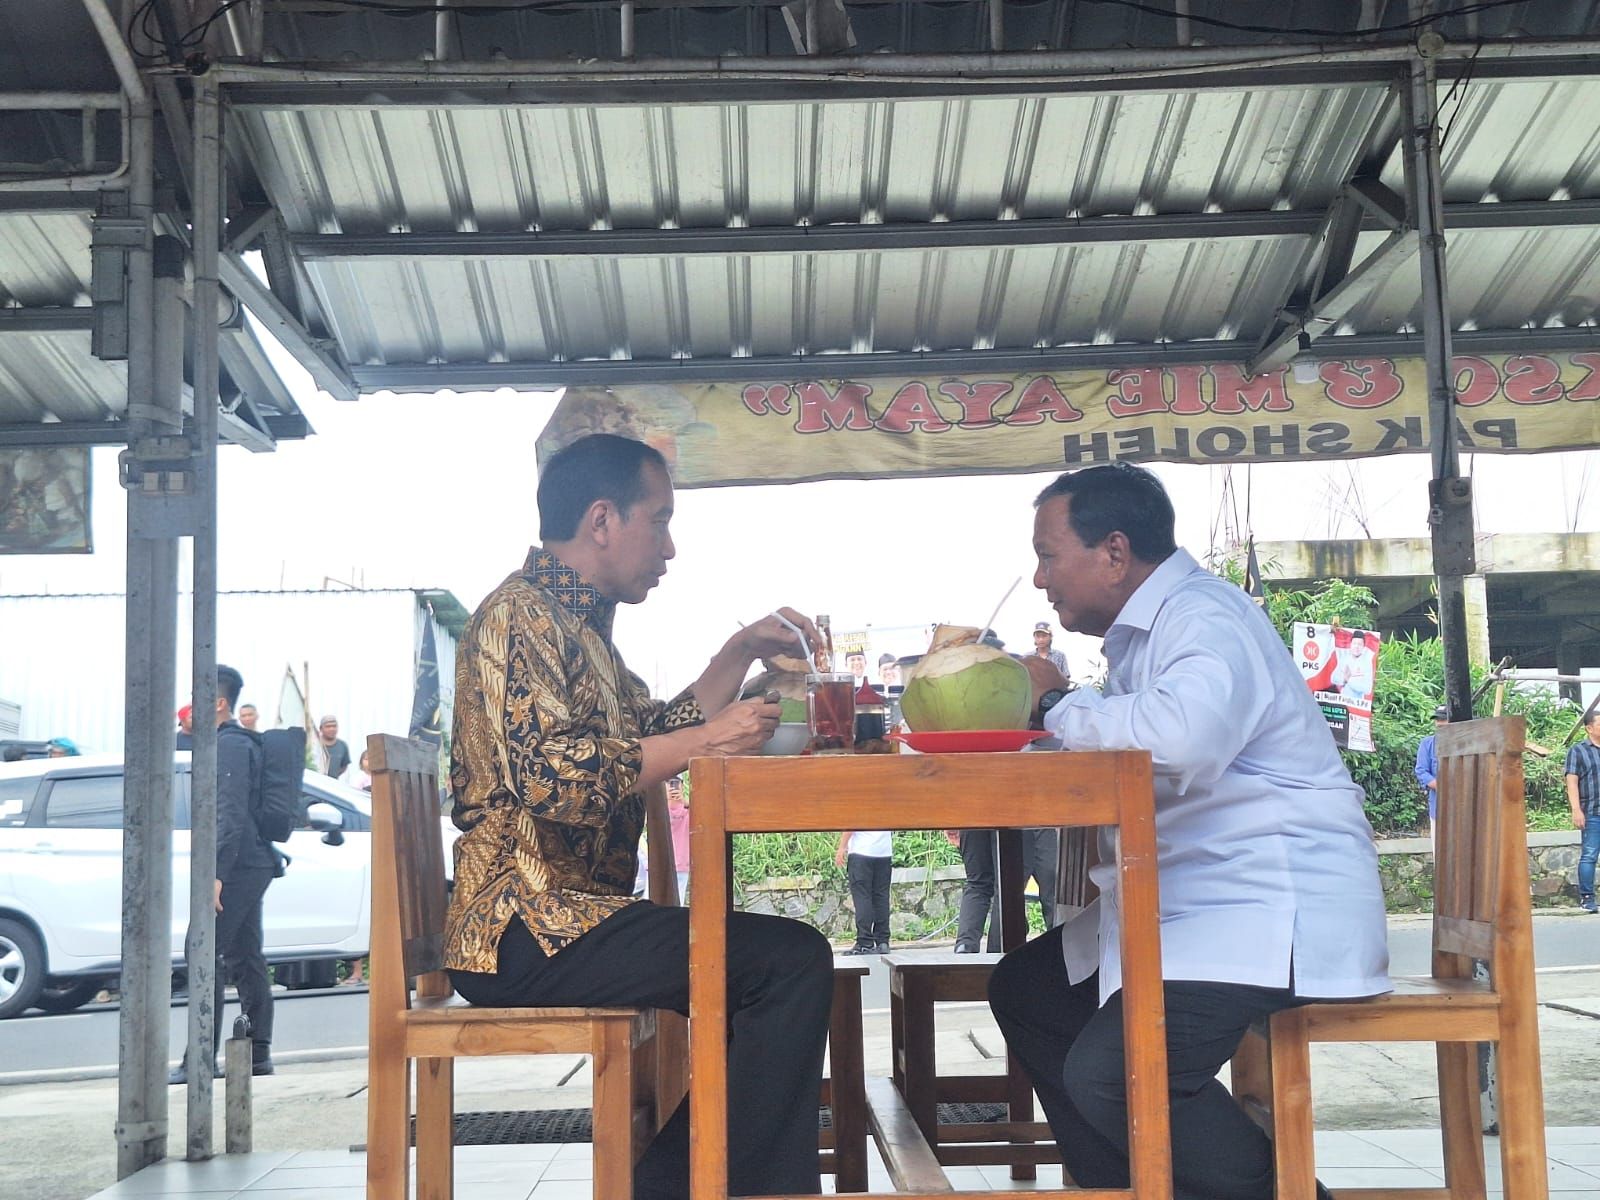 2 Kali Makan Bareng Prabowo, Jokowi Disebut 